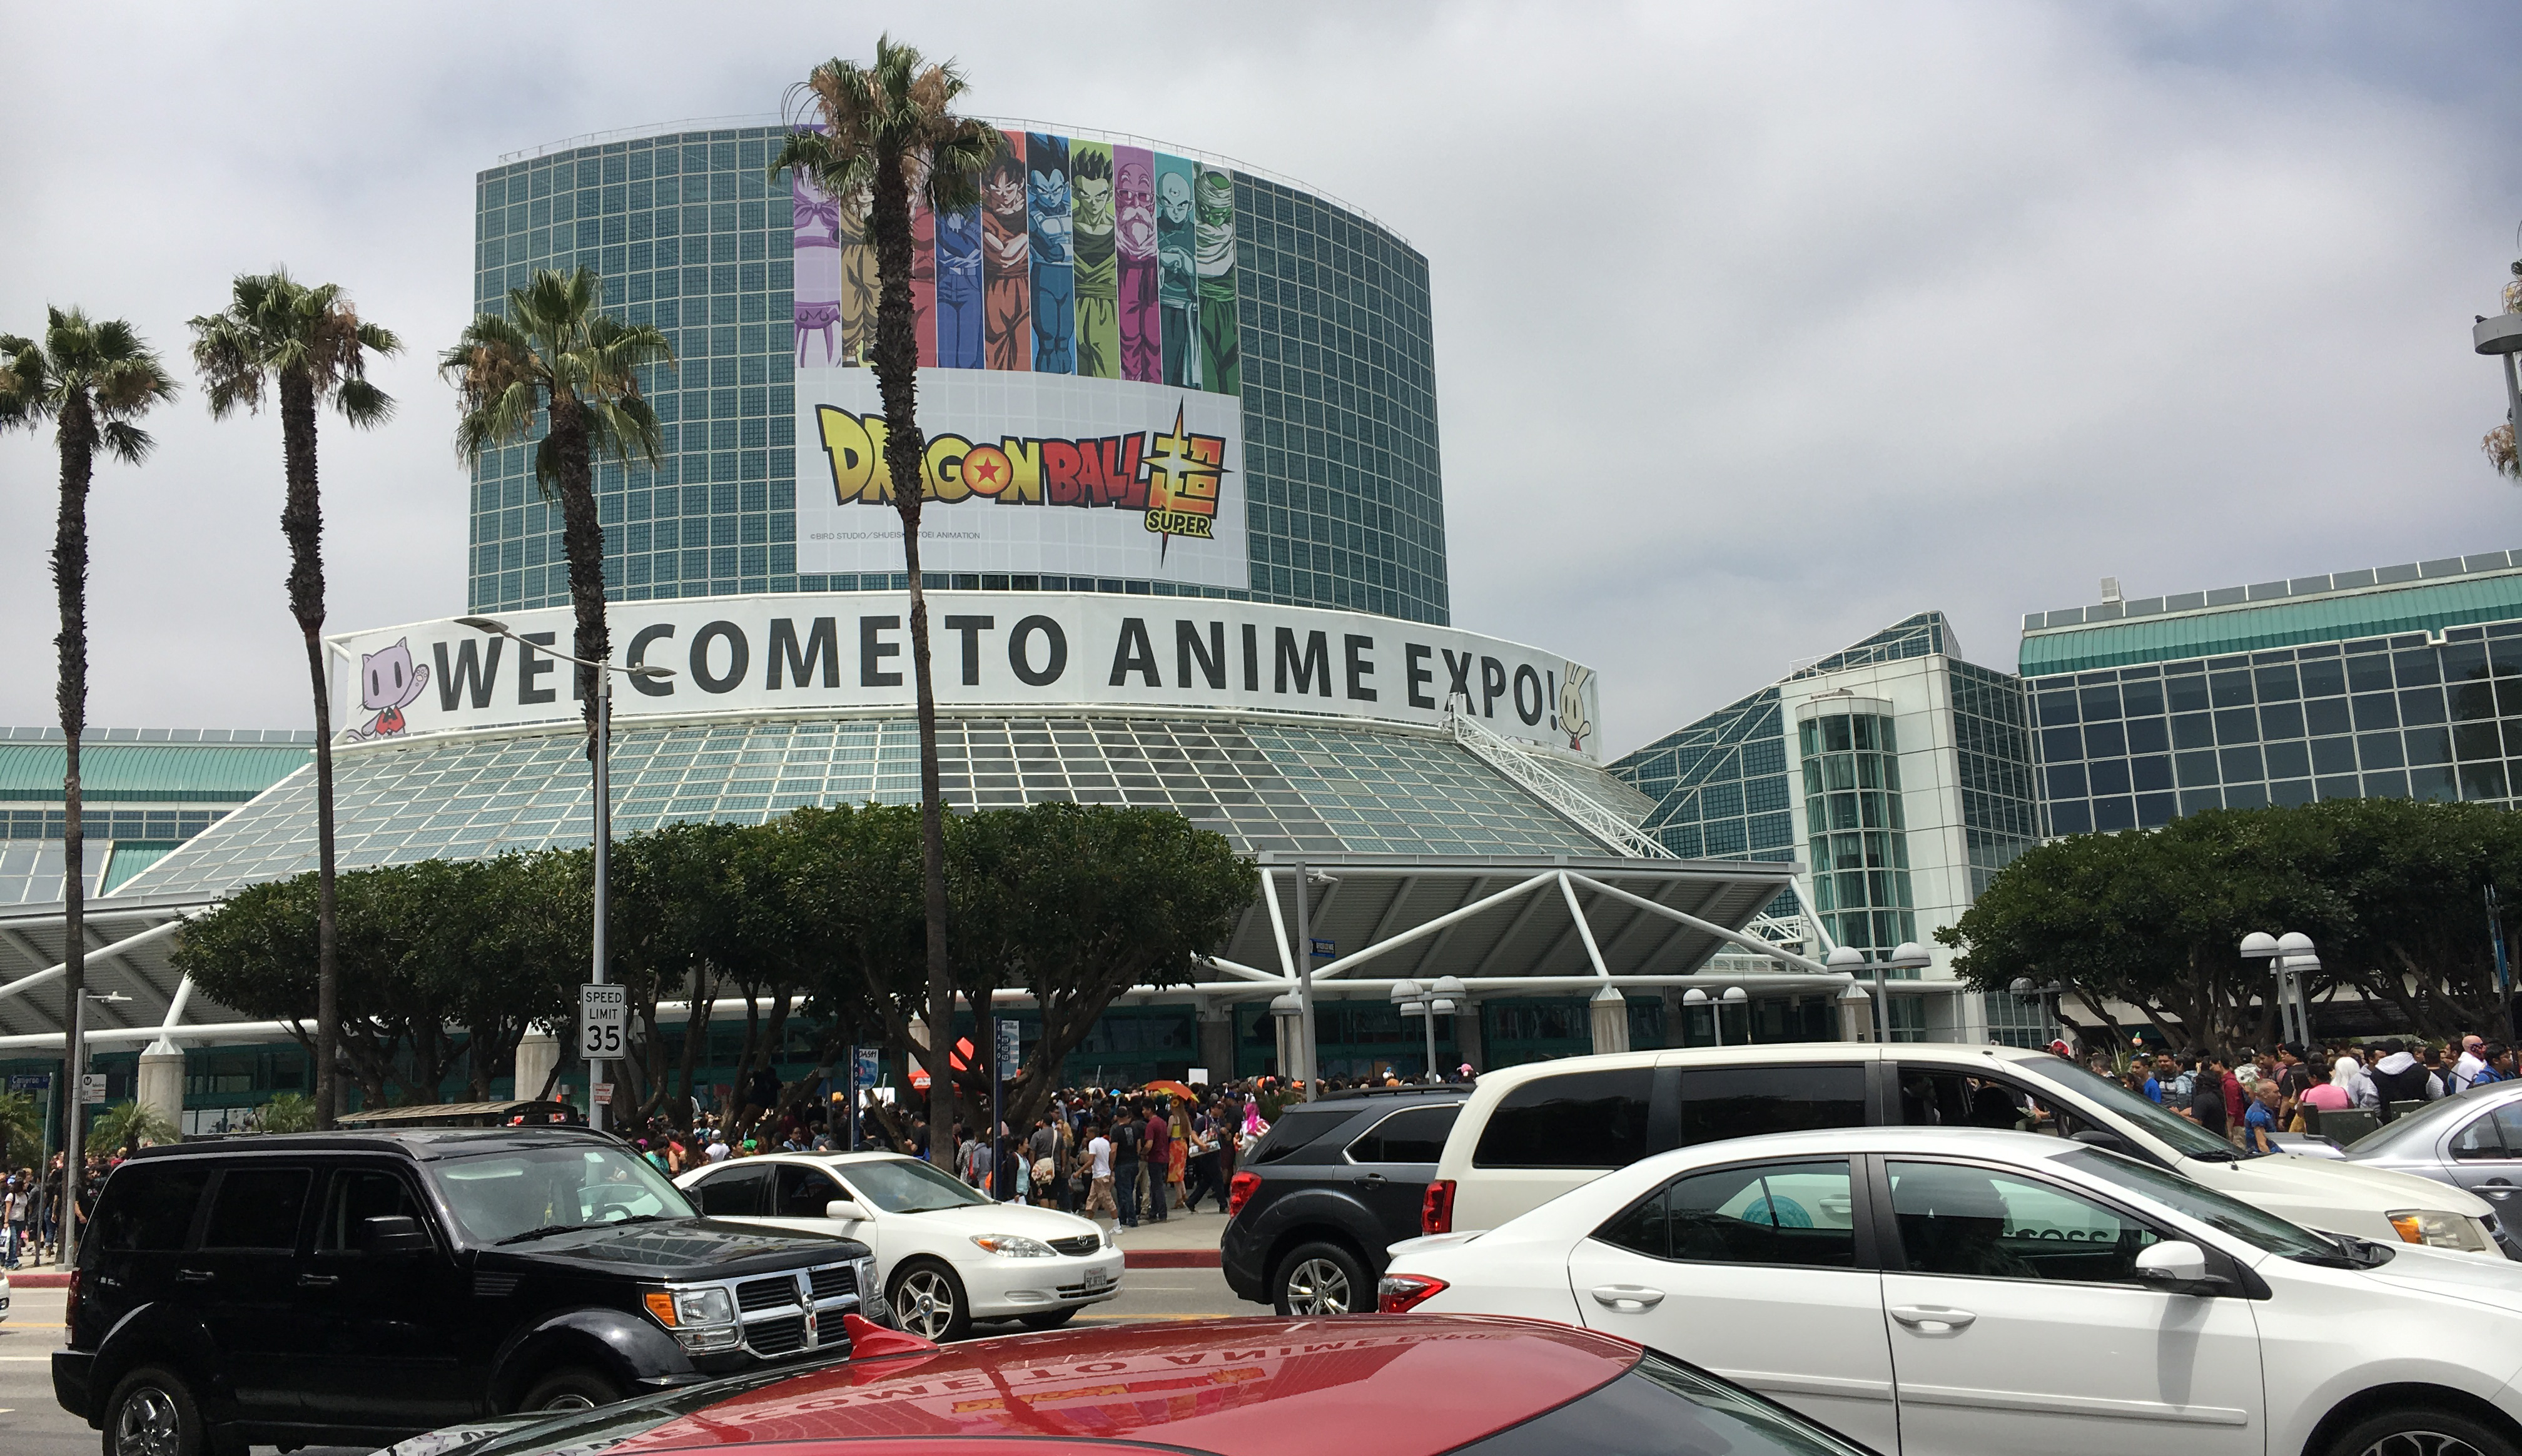 Manga Houses Shift Focus to Anime Expo over San Diego